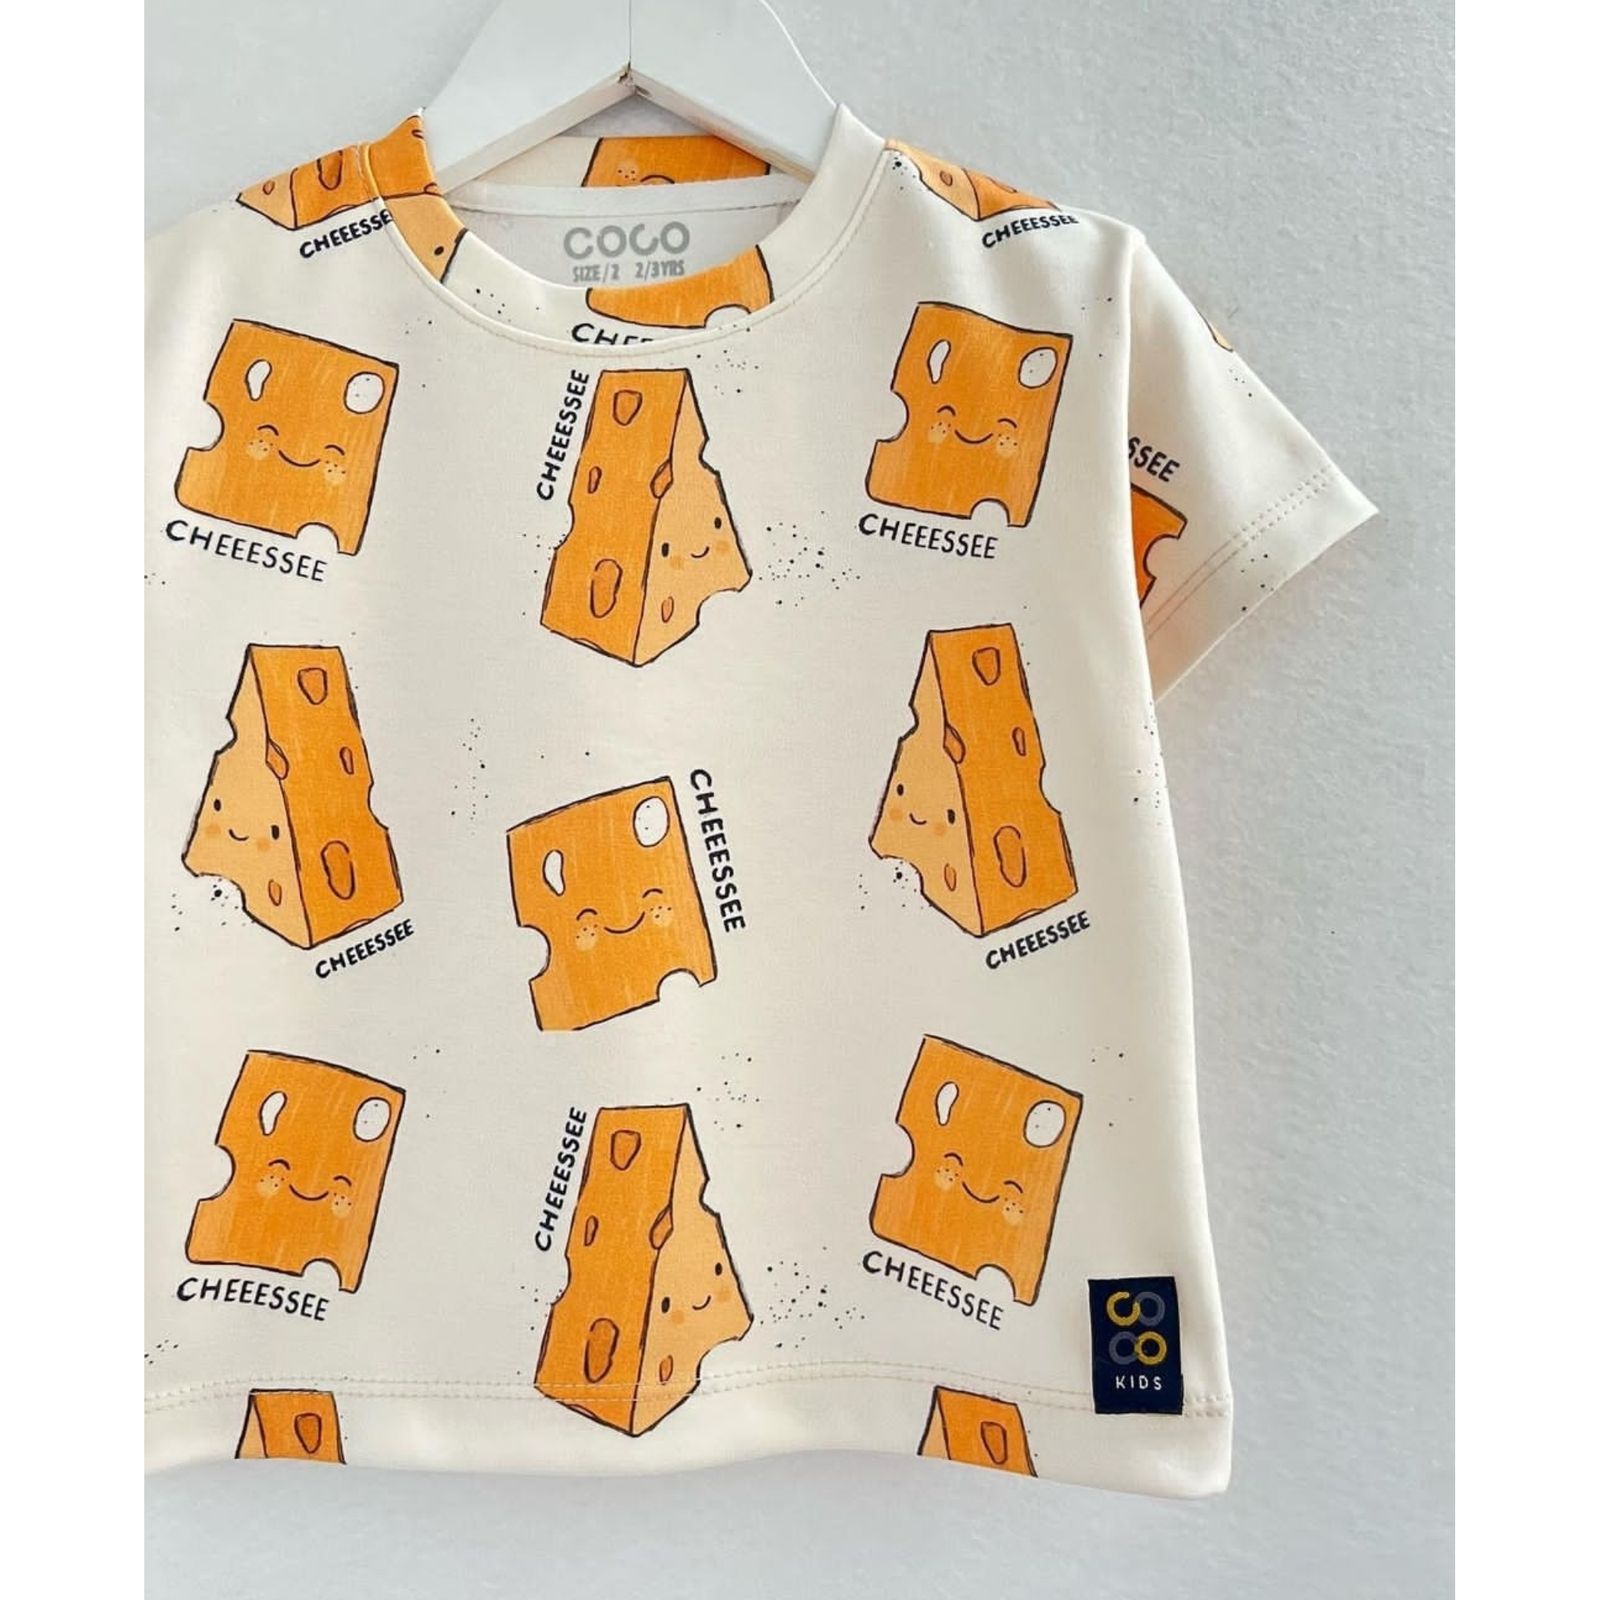 ست تی شرت و شلوار بچگانه مدل پنیر کد 0425 -  - 5